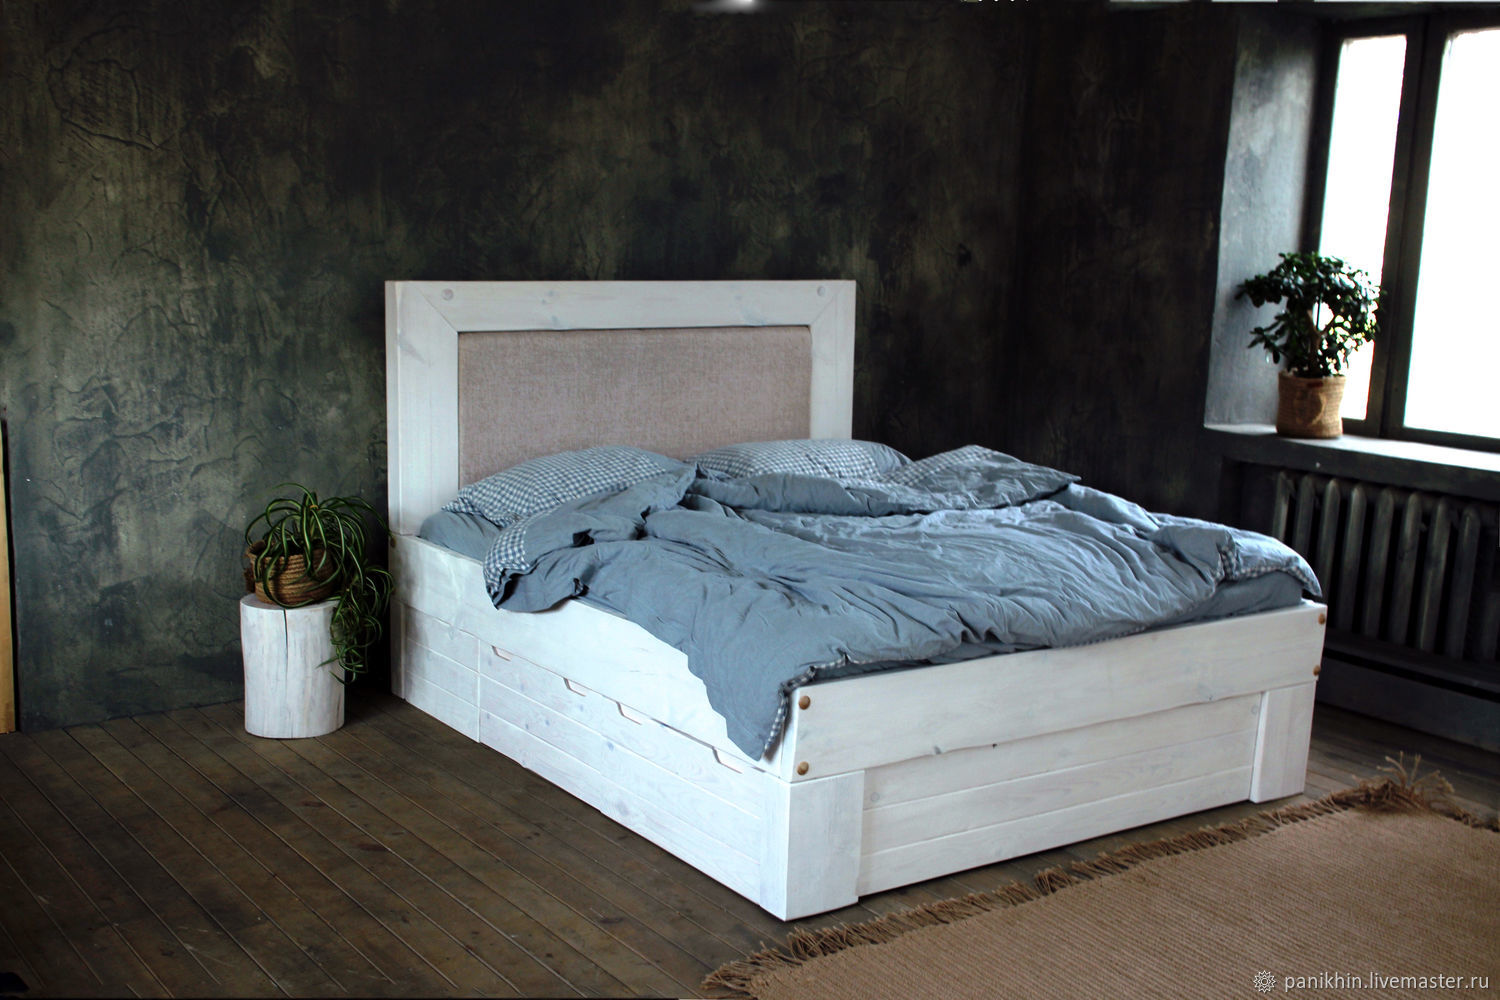 Двуспальная кровать с подголовником и ящиками